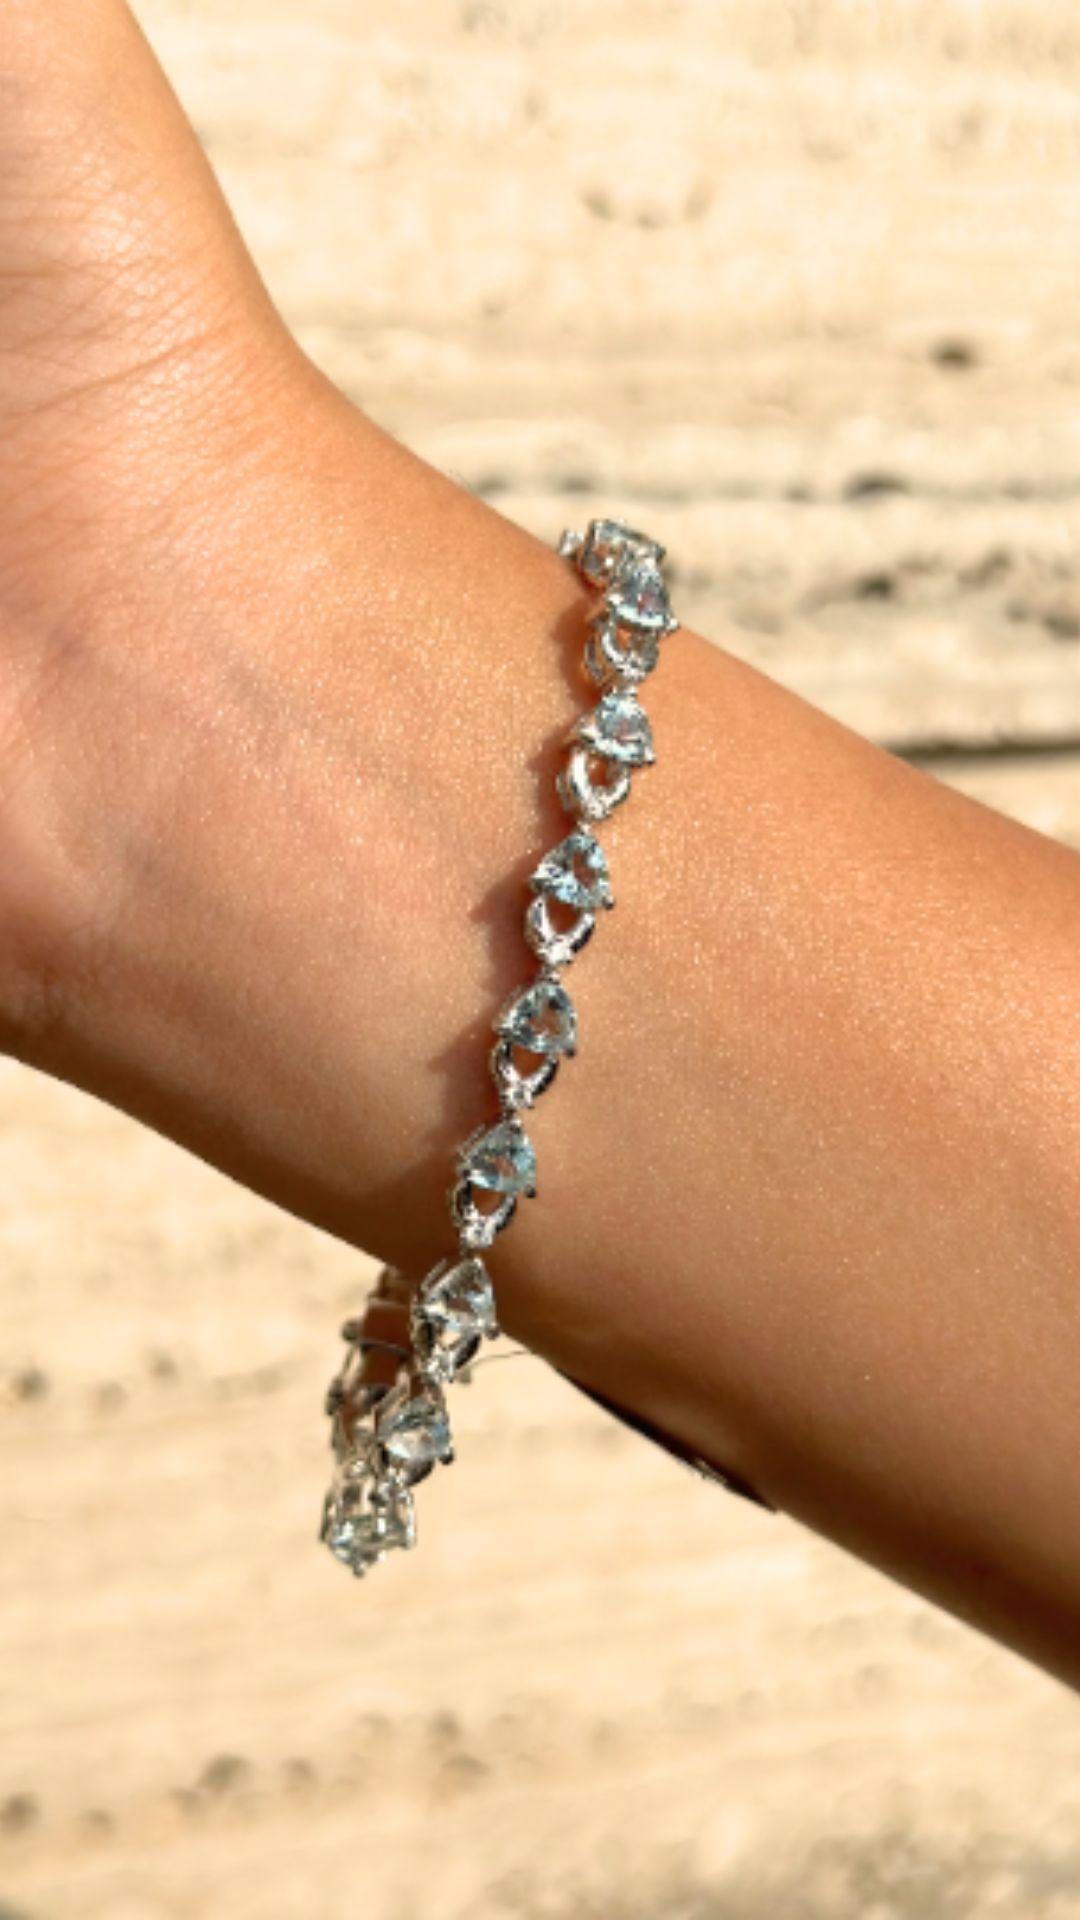 De magnifiques bracelets uniques en aigue-marine taillée en cœur, conçus avec amour, incluant des pierres précieuses de luxe triées sur le volet pour chaque pièce de créateur. Cette pièce d'une facture exquise attire tous les regards. Incrusté de